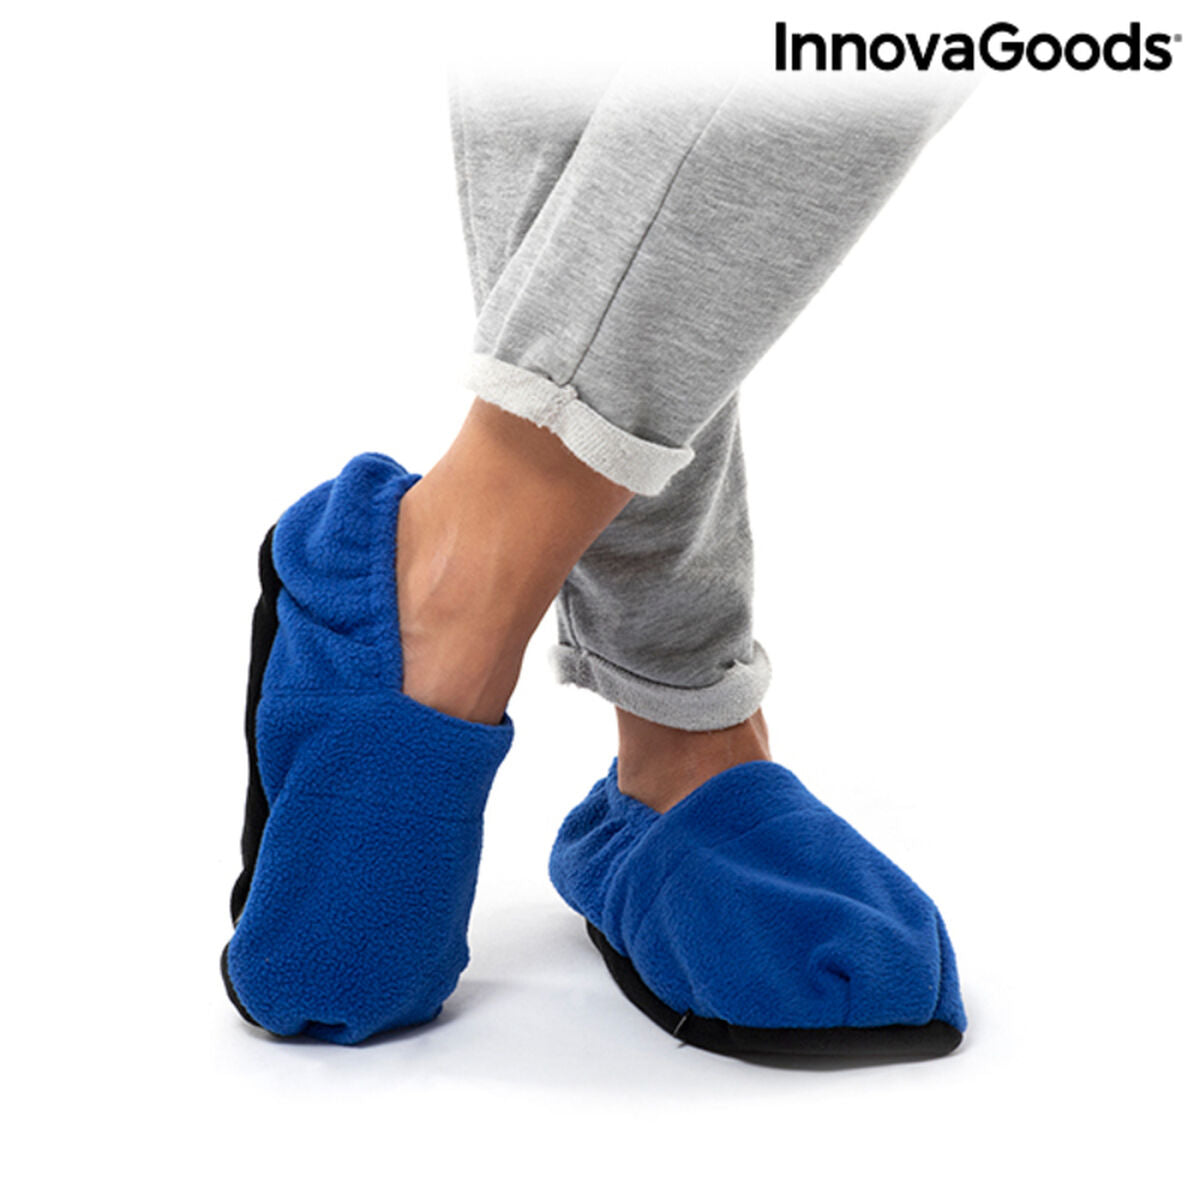 Verwarde slippers, op te warmen in de magnetron InnovaGoods Blauw